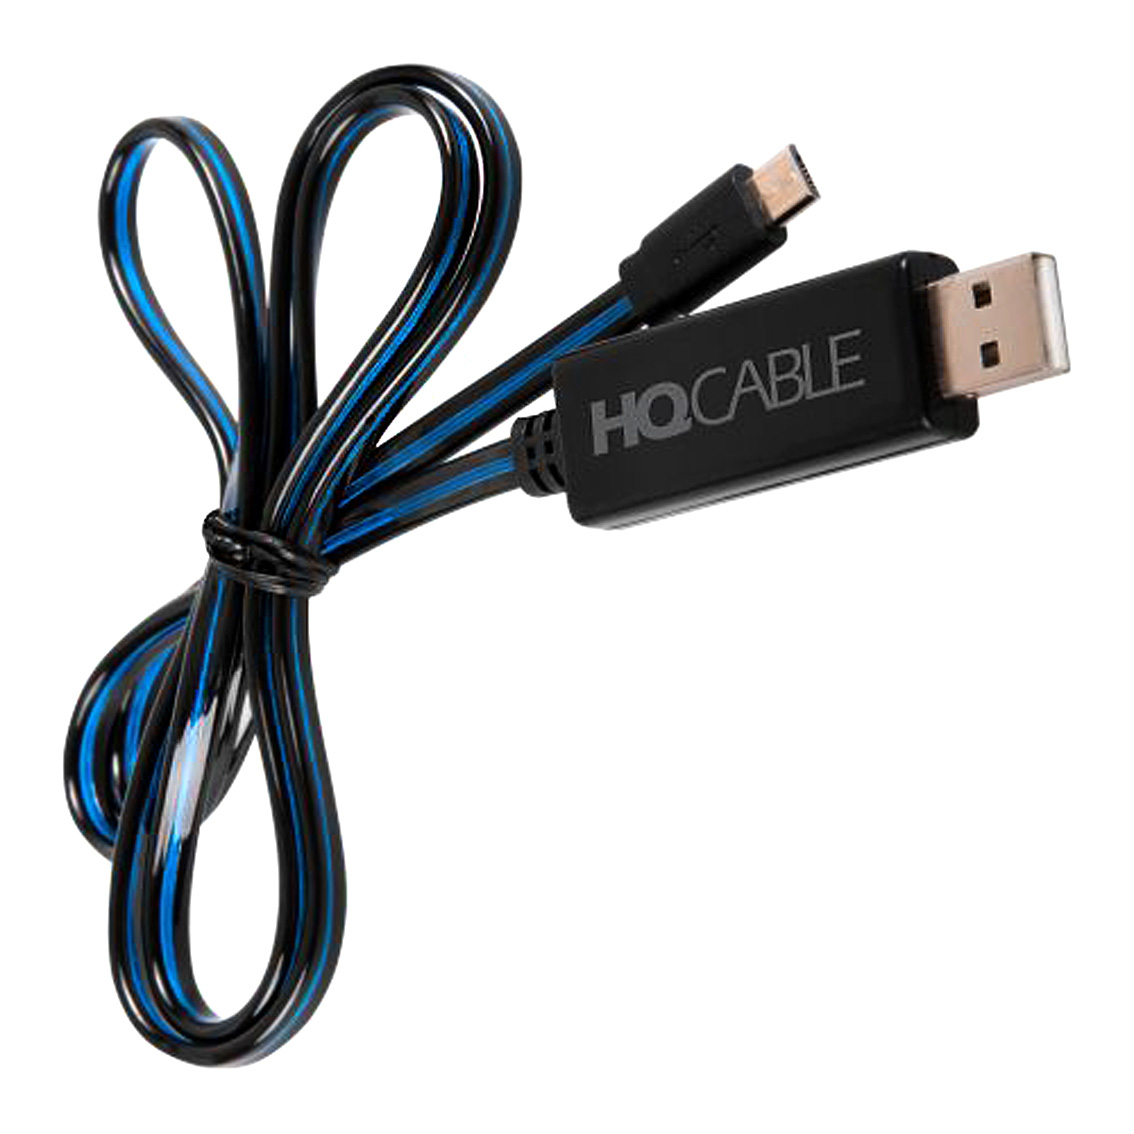 HQCable – nowa marka kabli